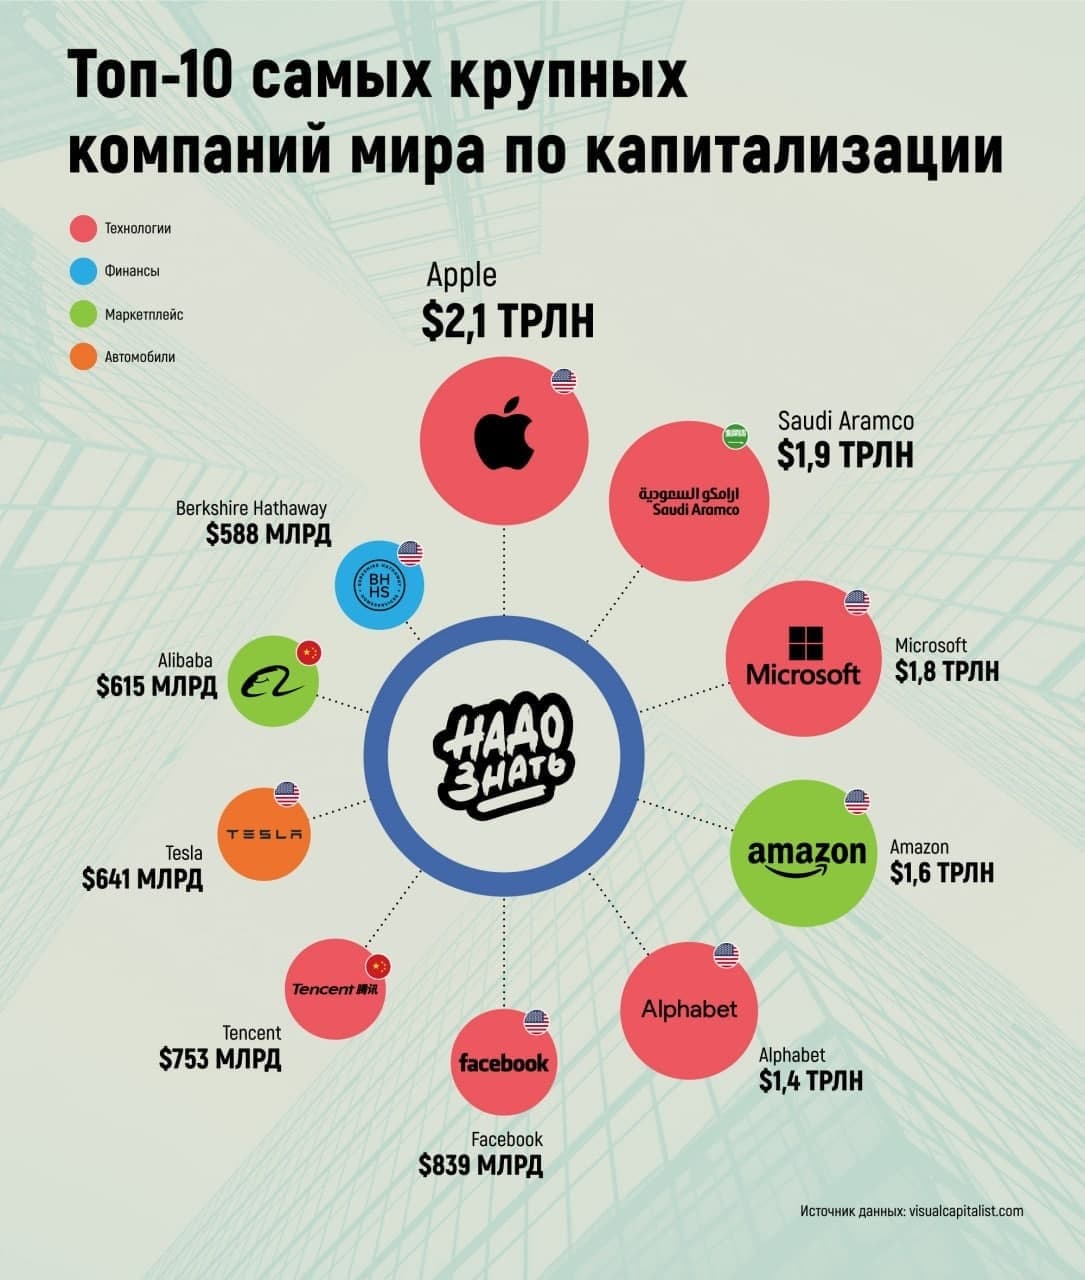 Топ-10 самых крупных компаний мира по капитализации